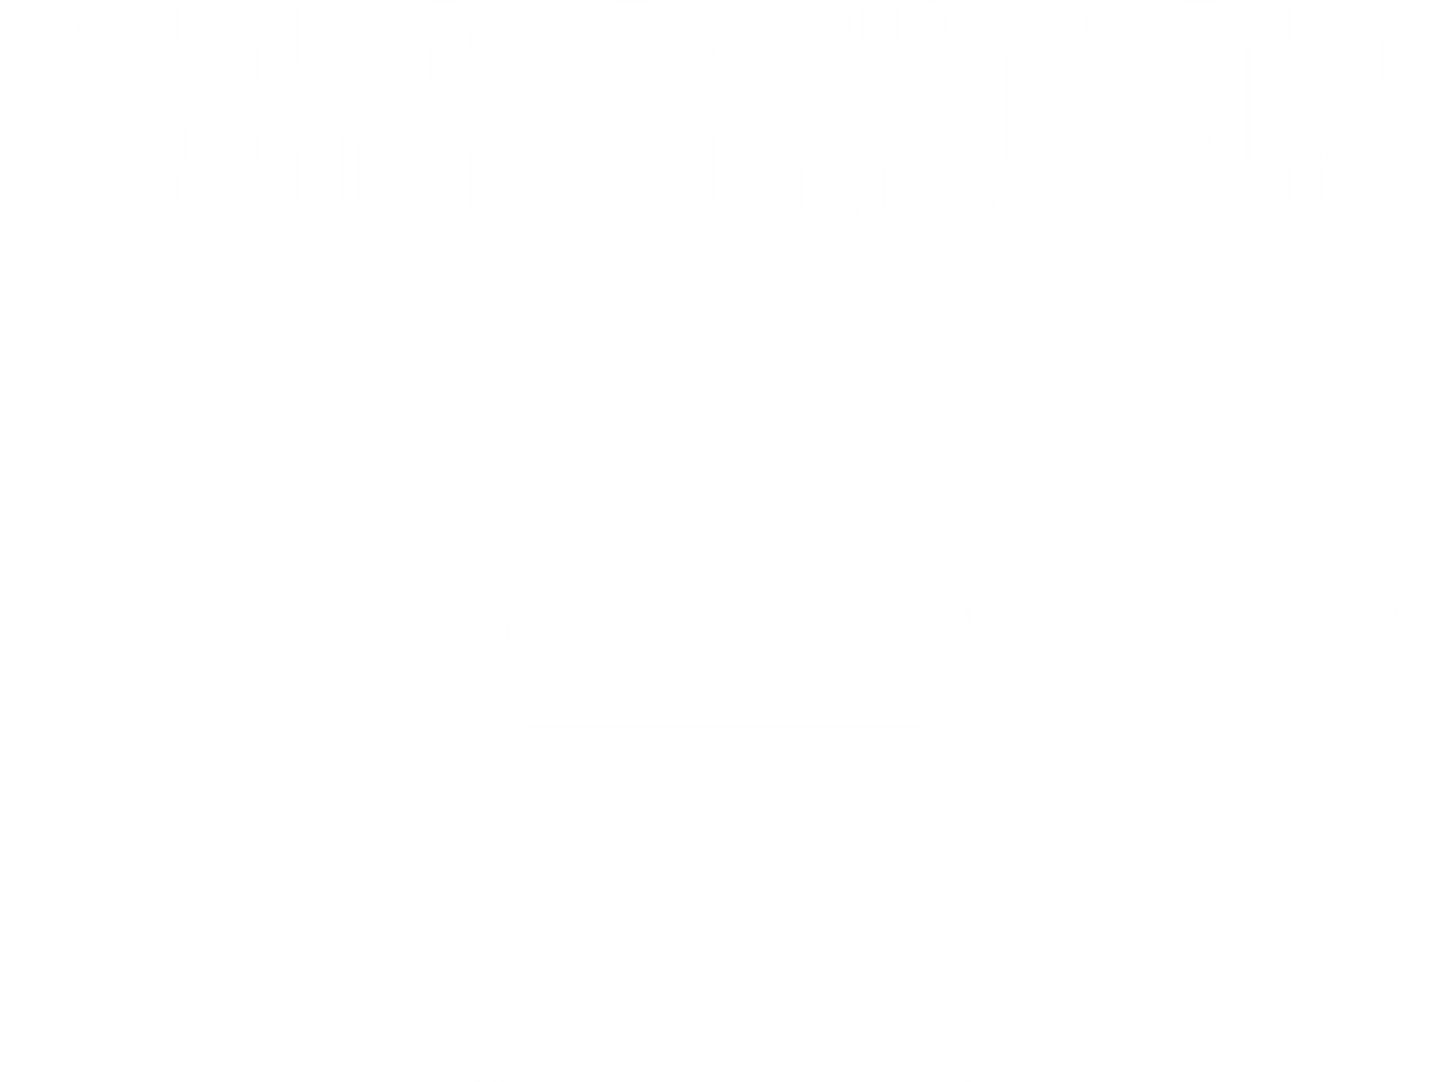 Where Corny Begins, Dad Jokes - Roadkill T-Shirts